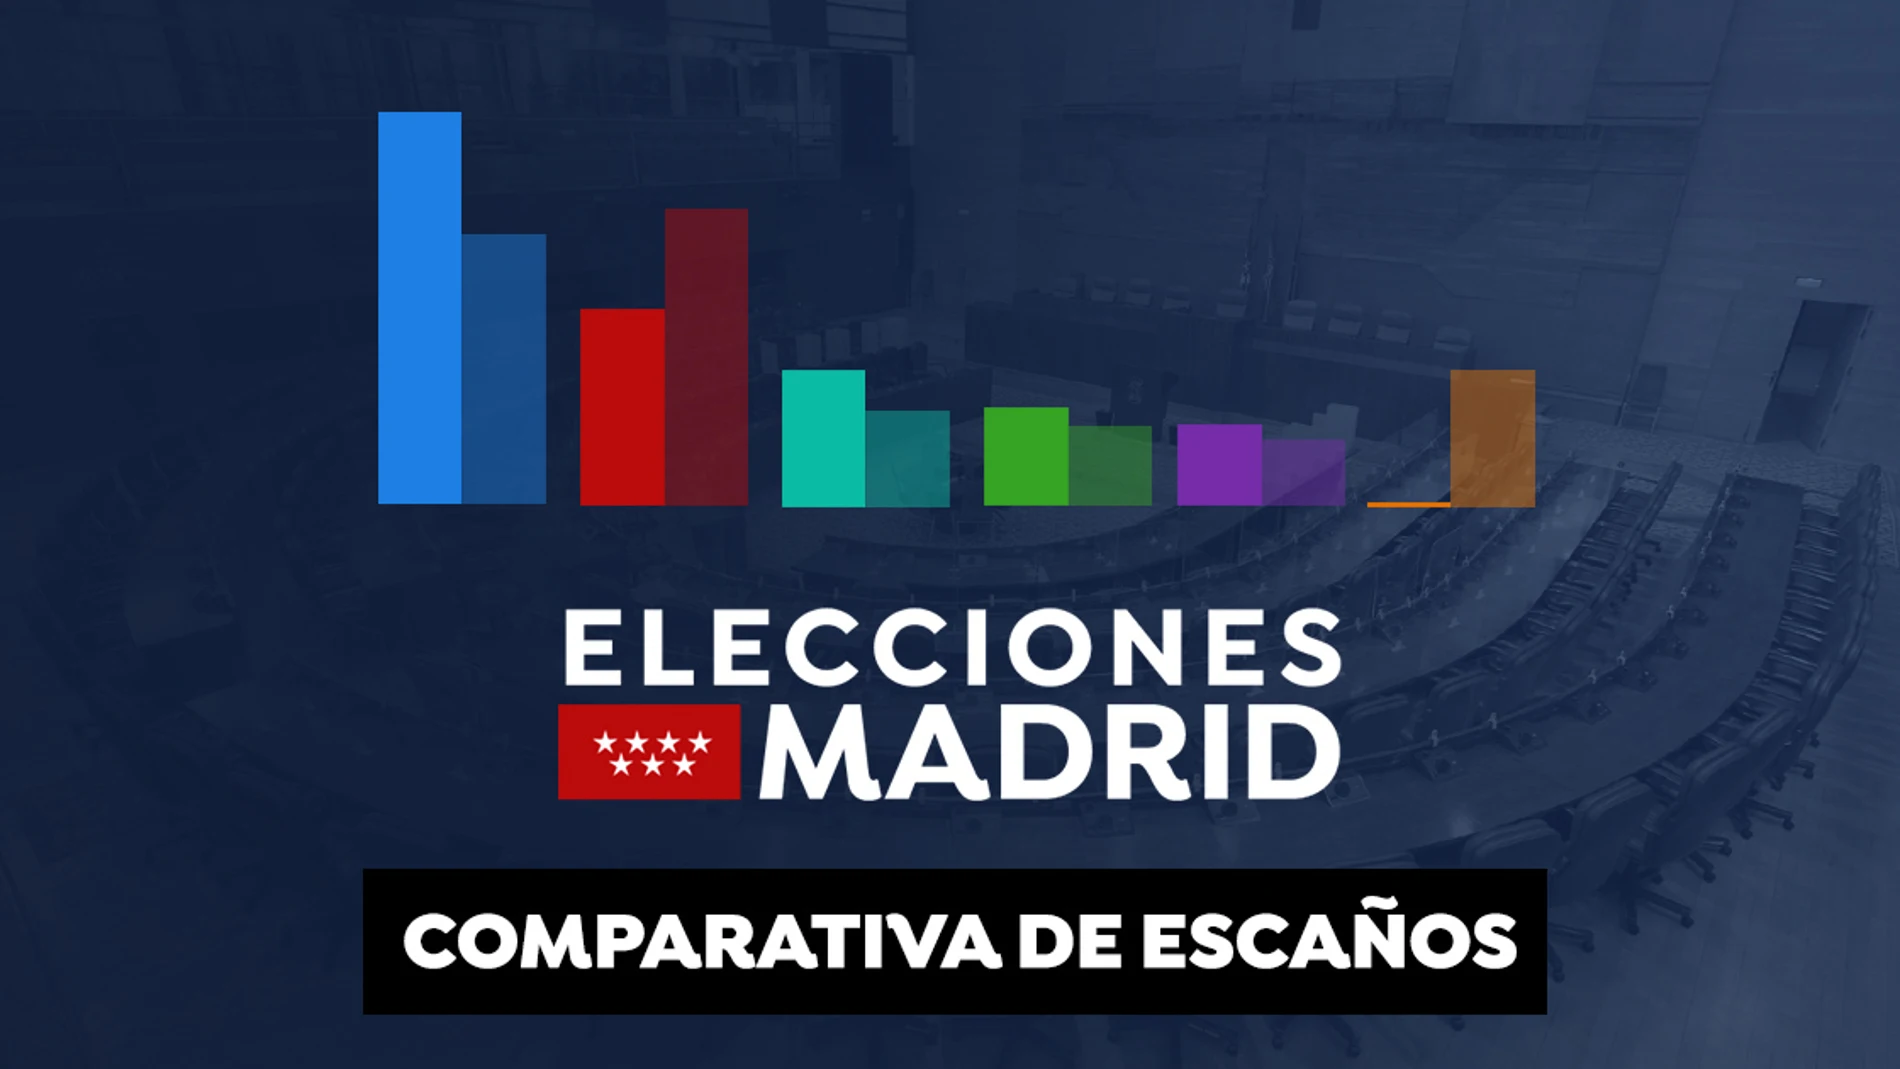 Elecciones Madrid 2021: Comparativa de escaños 